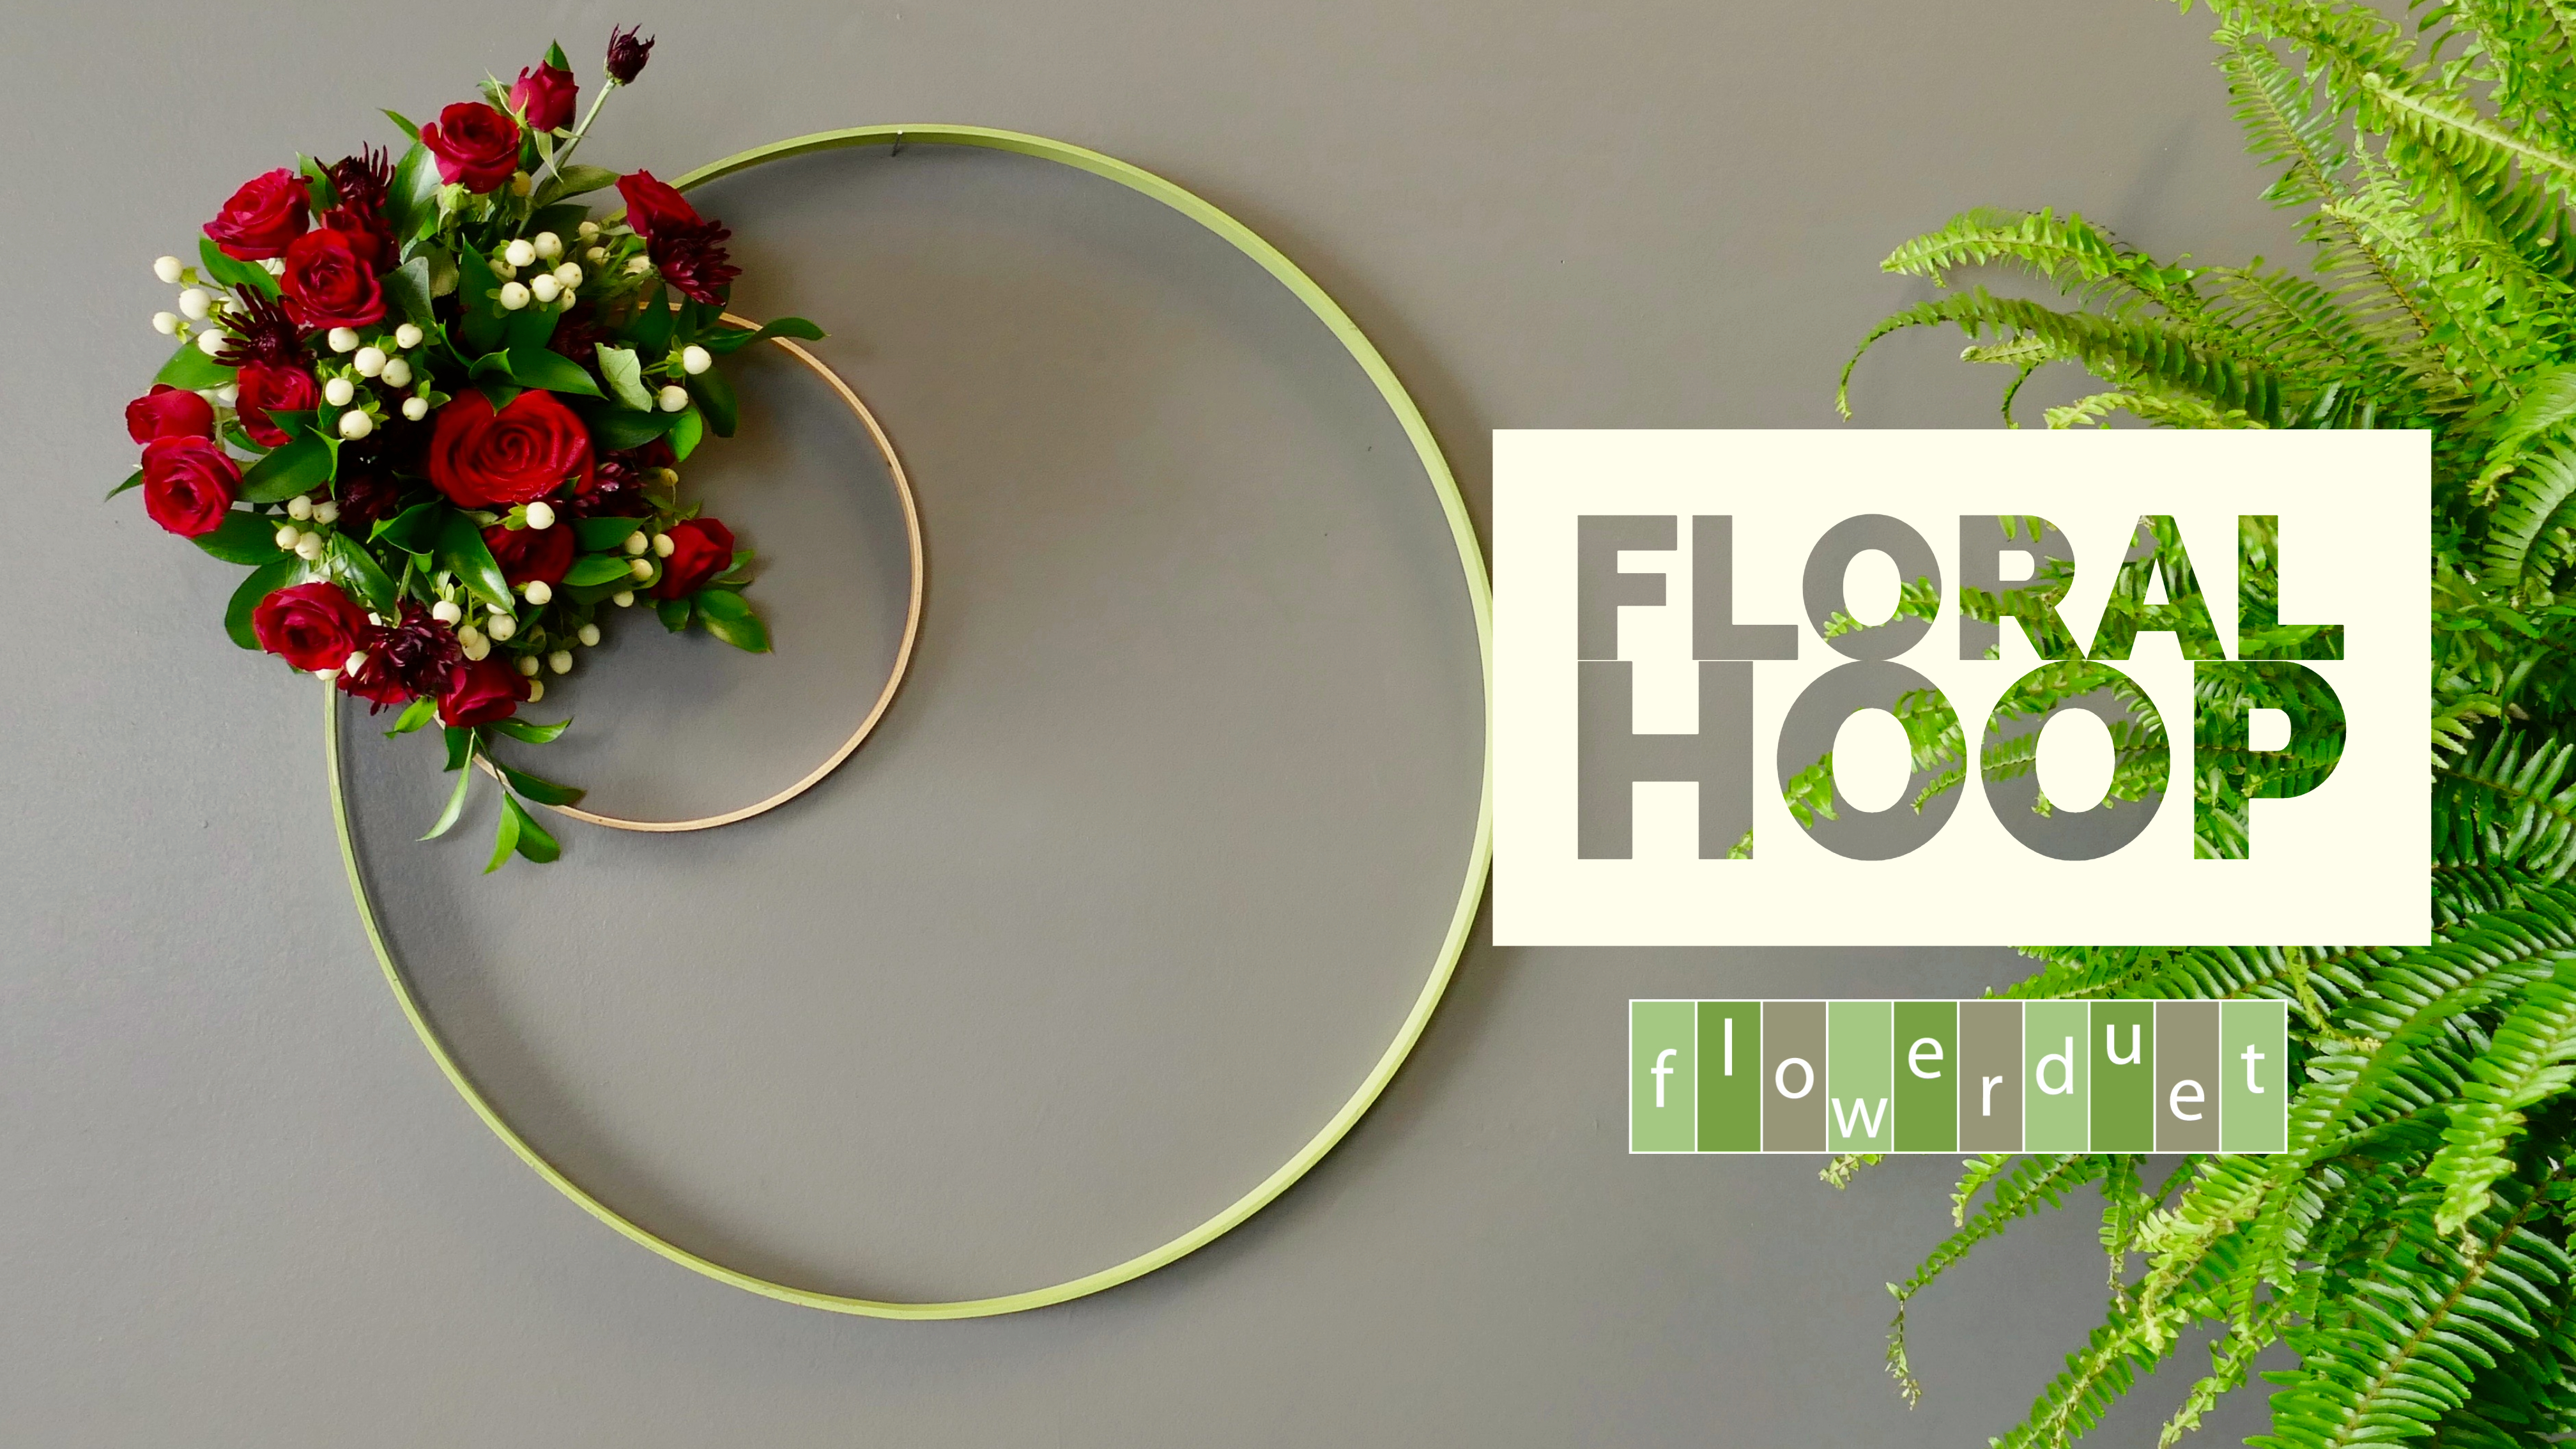 Floral Hoop